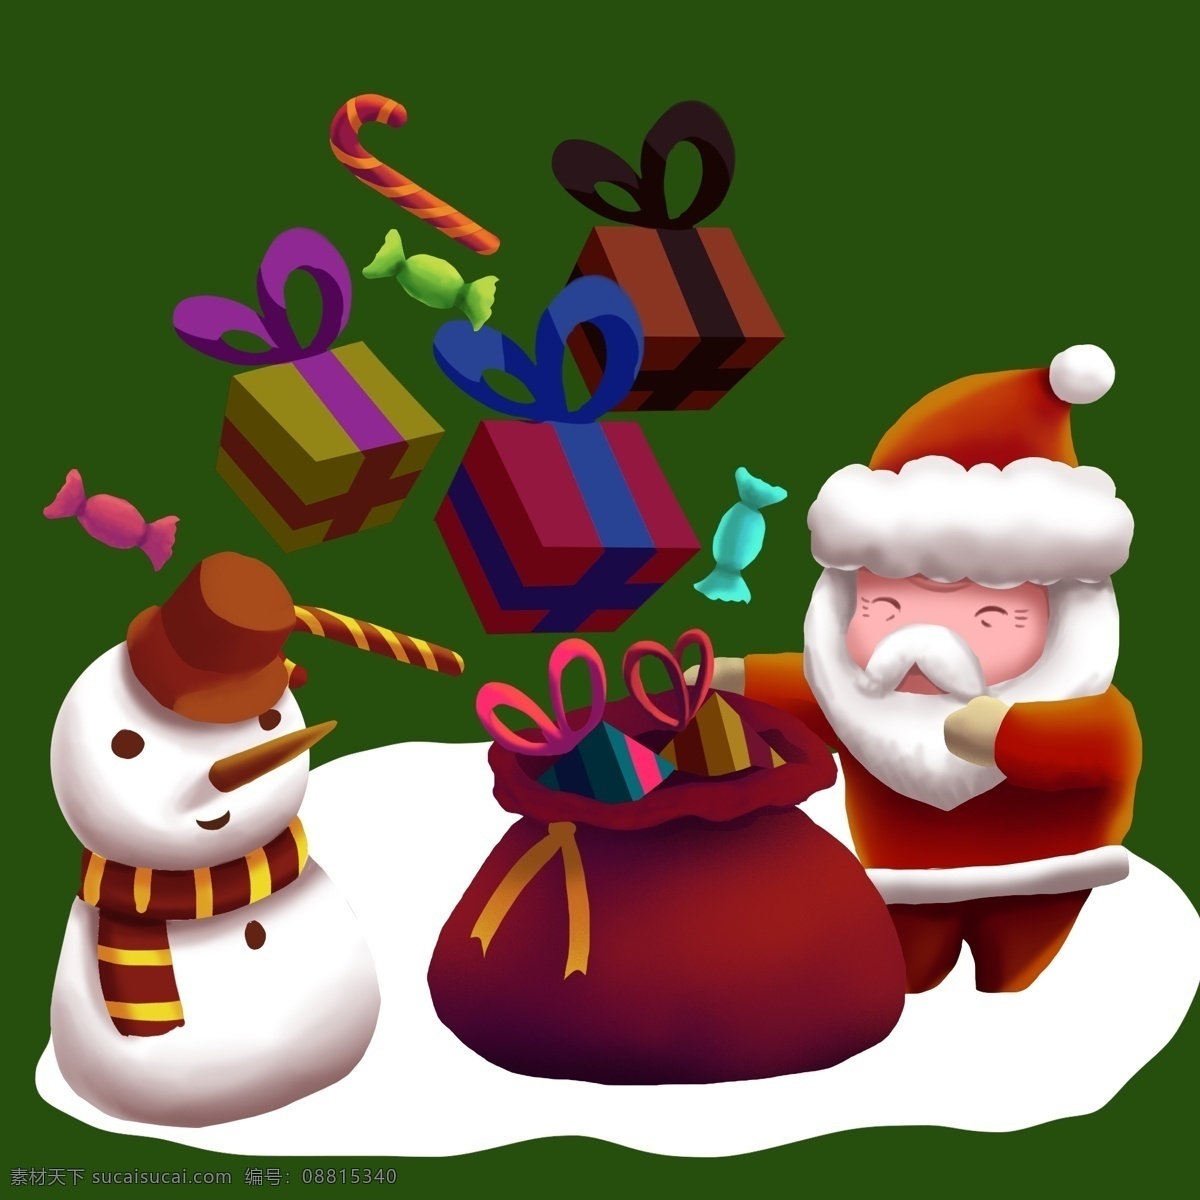 圣诞 主题 圣诞老人 发 礼物 手绘 免 抠 元素 圣诞节 圣诞夜 圣诞快乐 圣诞礼物 麋鹿 小孩 礼品 西方传统节日 圣诞树 雪人